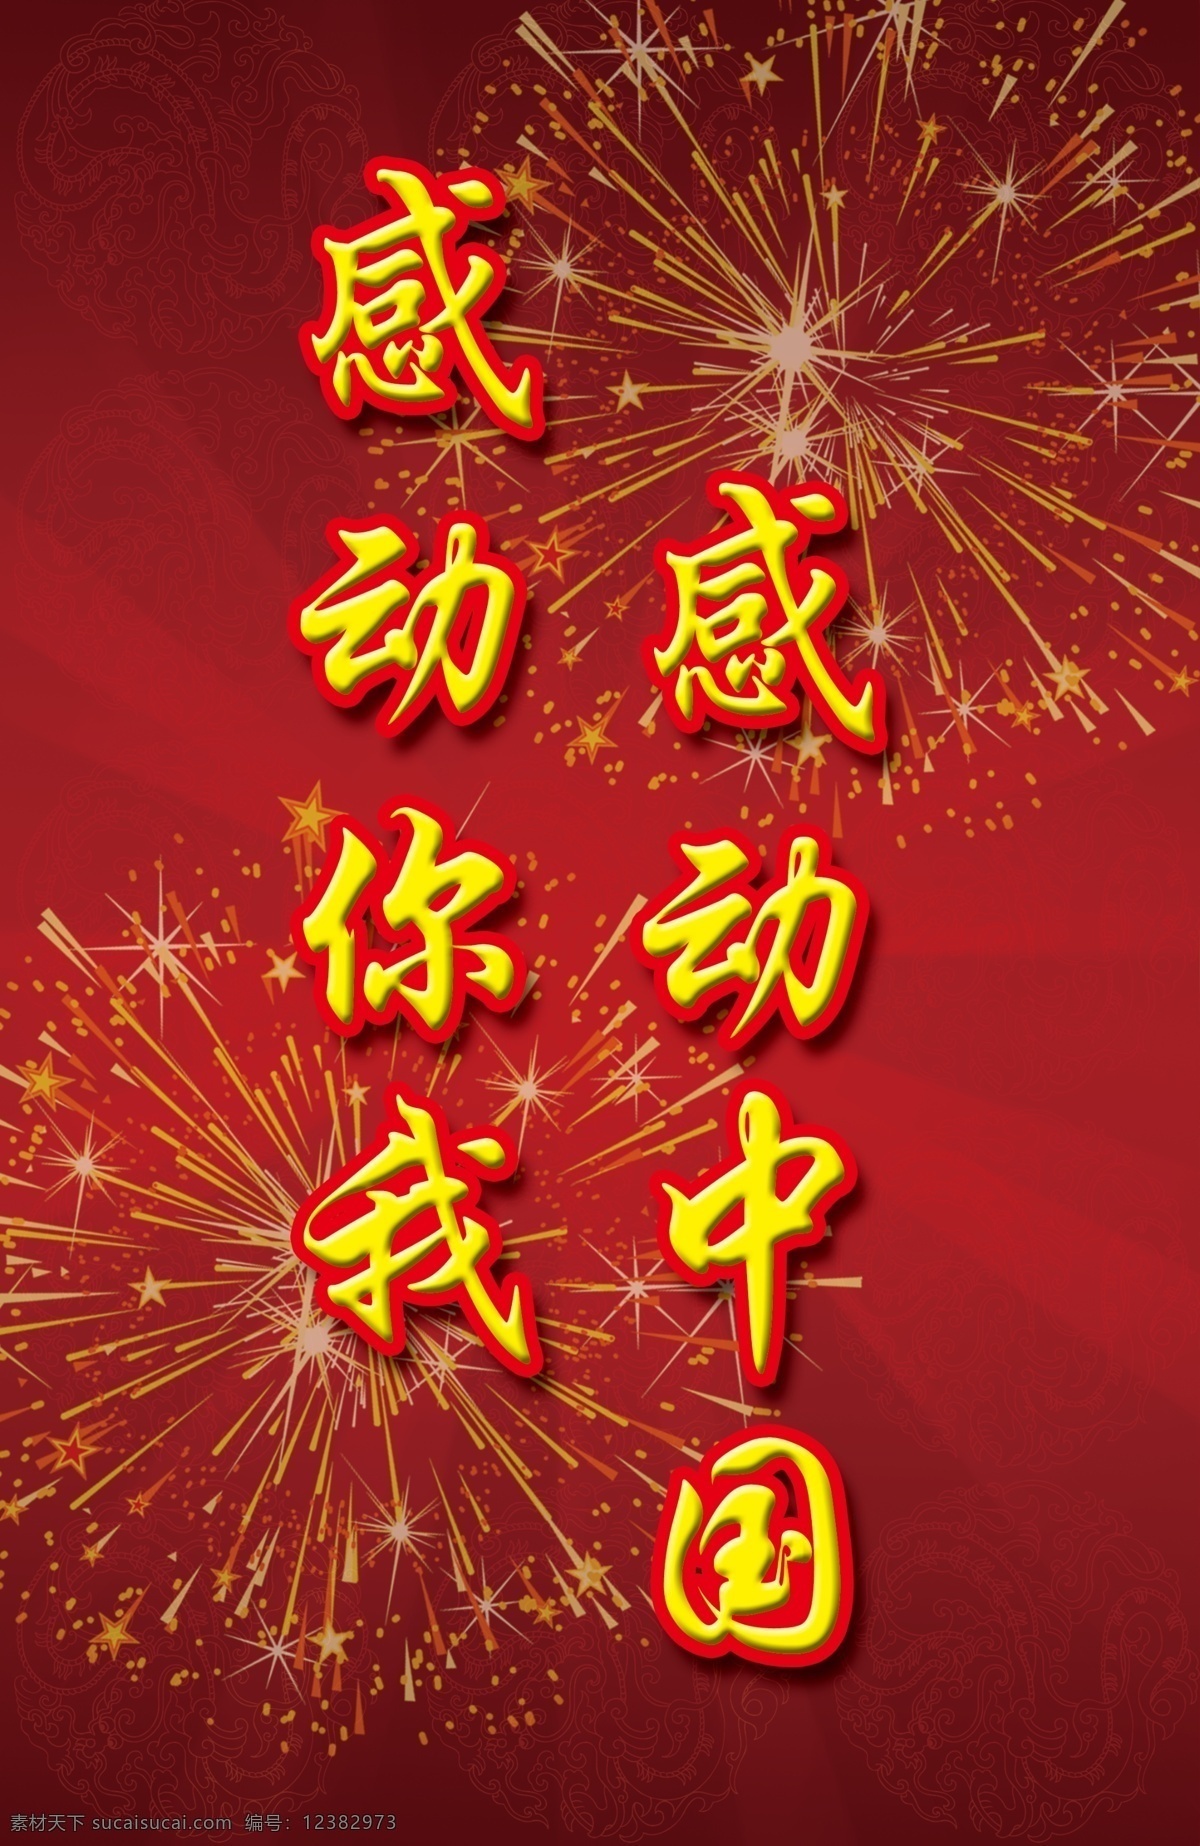 2012 感动 中国 十大 人物 模板 2013 红色调 喜庆 海报 展板 礼花 广告设计模板 源文件